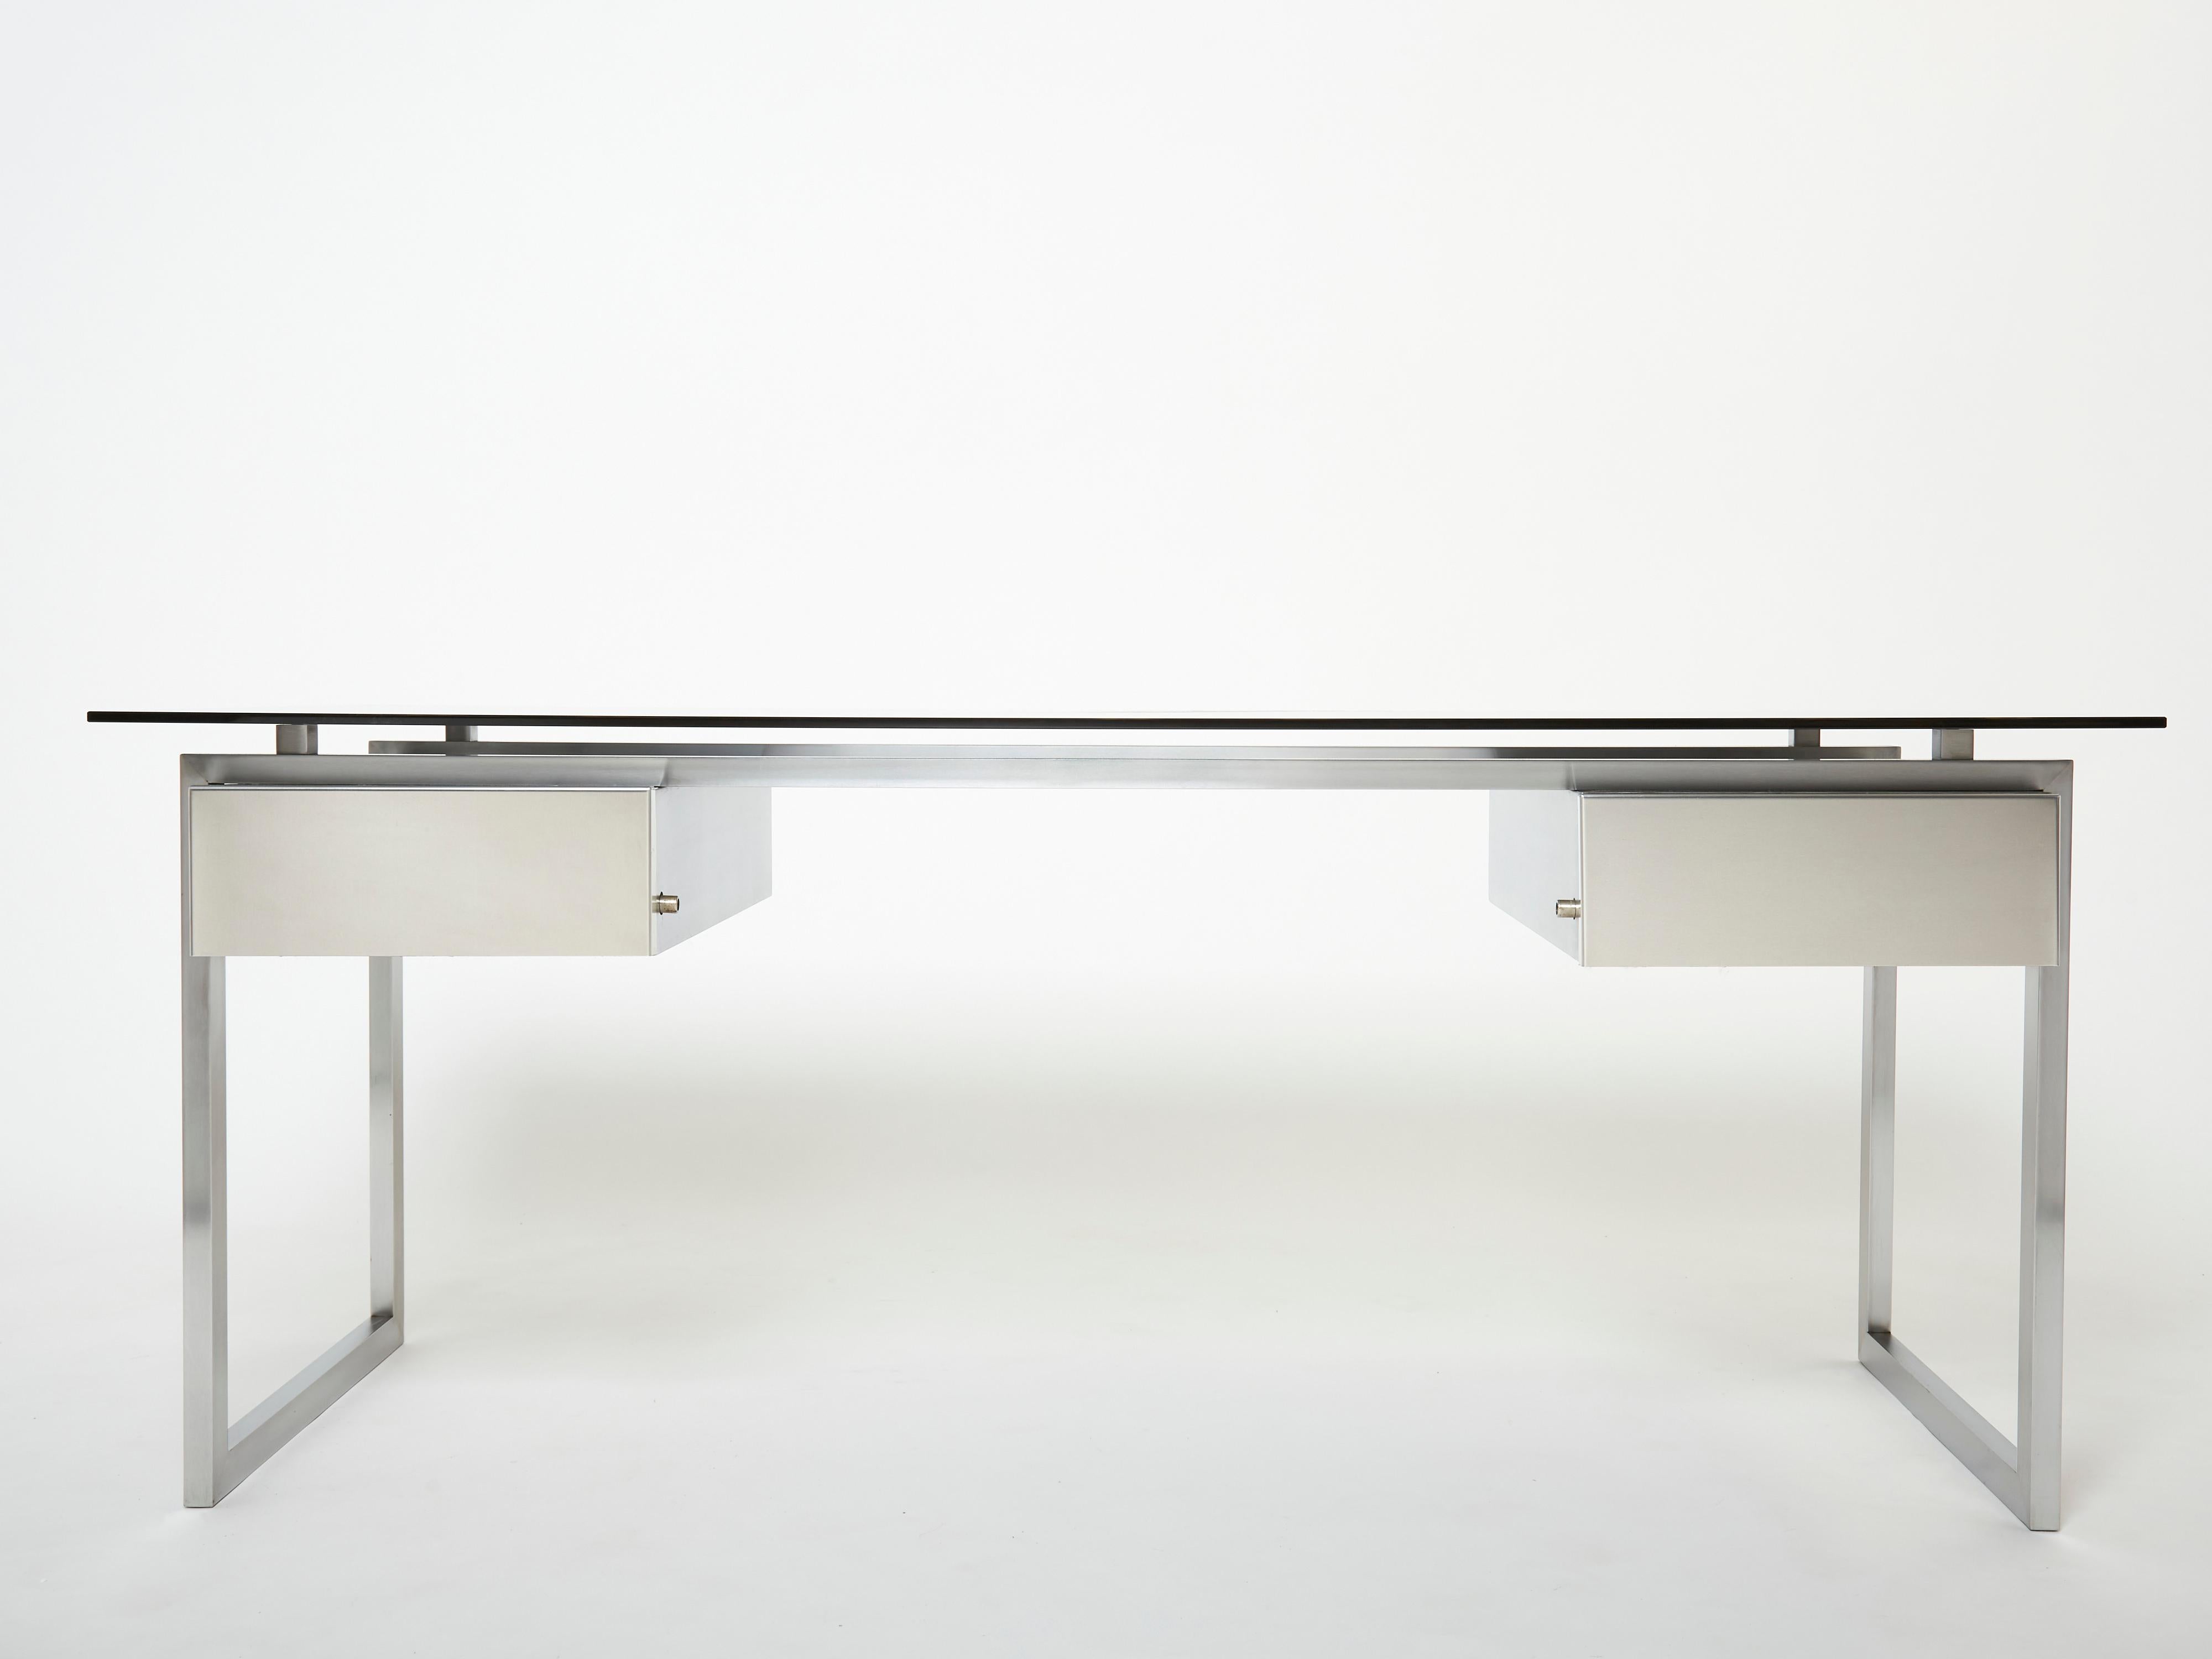 Rare table de bureau en acier inoxydable brossé conçue par le designer français Patrice Maffei pour Steele dans les années 1970, elle comporte deux tiroirs verrouillables et un plateau en verre fumé gris. S'inscrivant dans la tendance inox des